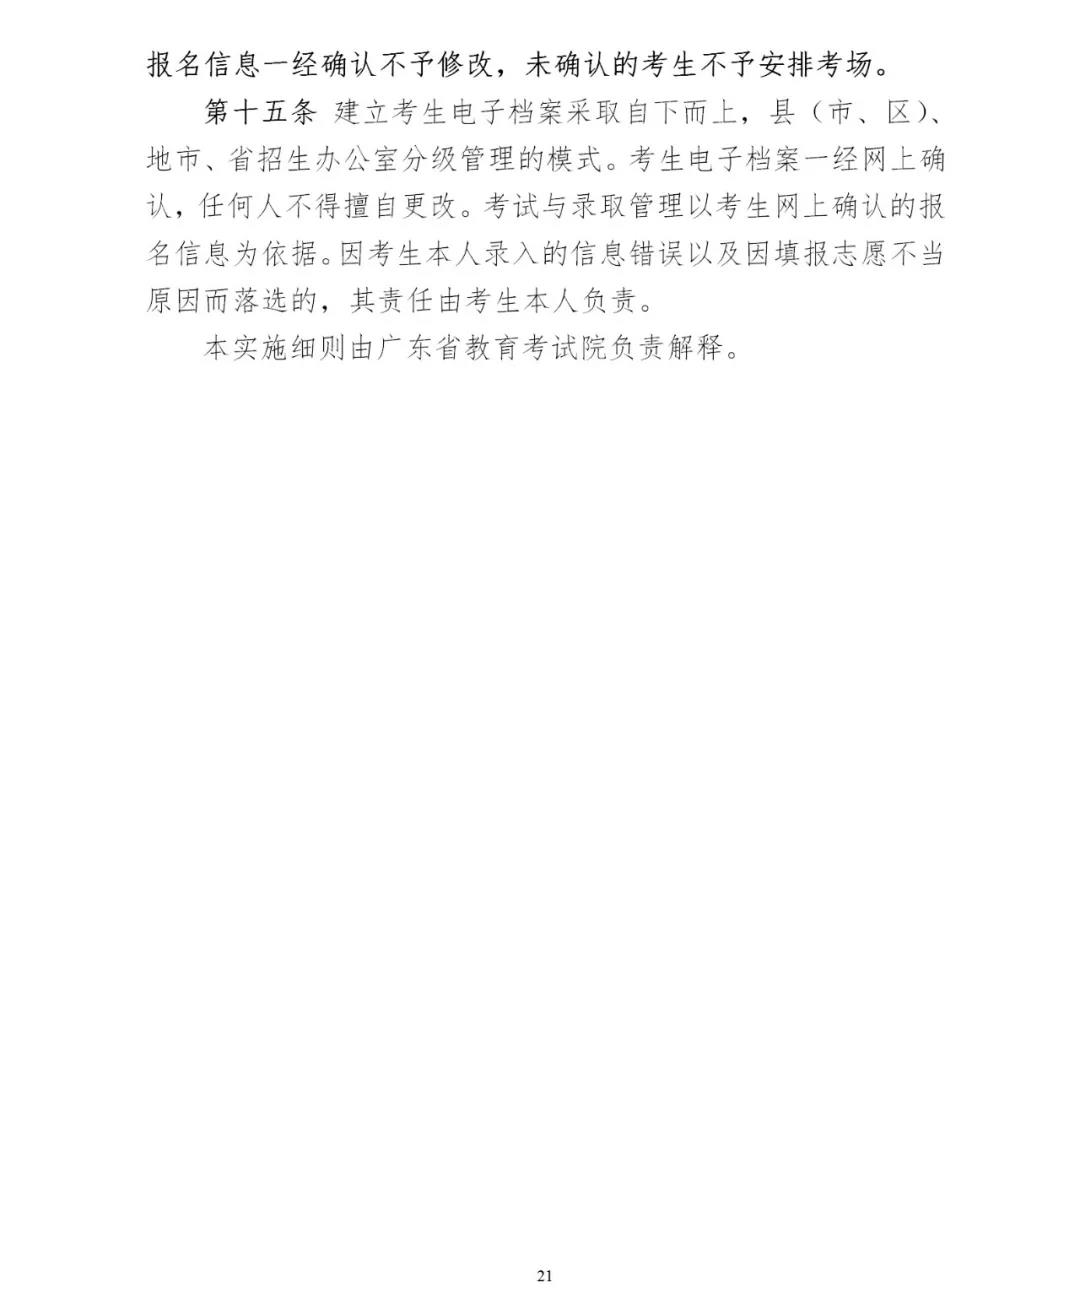 2020年广东省成人高考网上报名实施细则